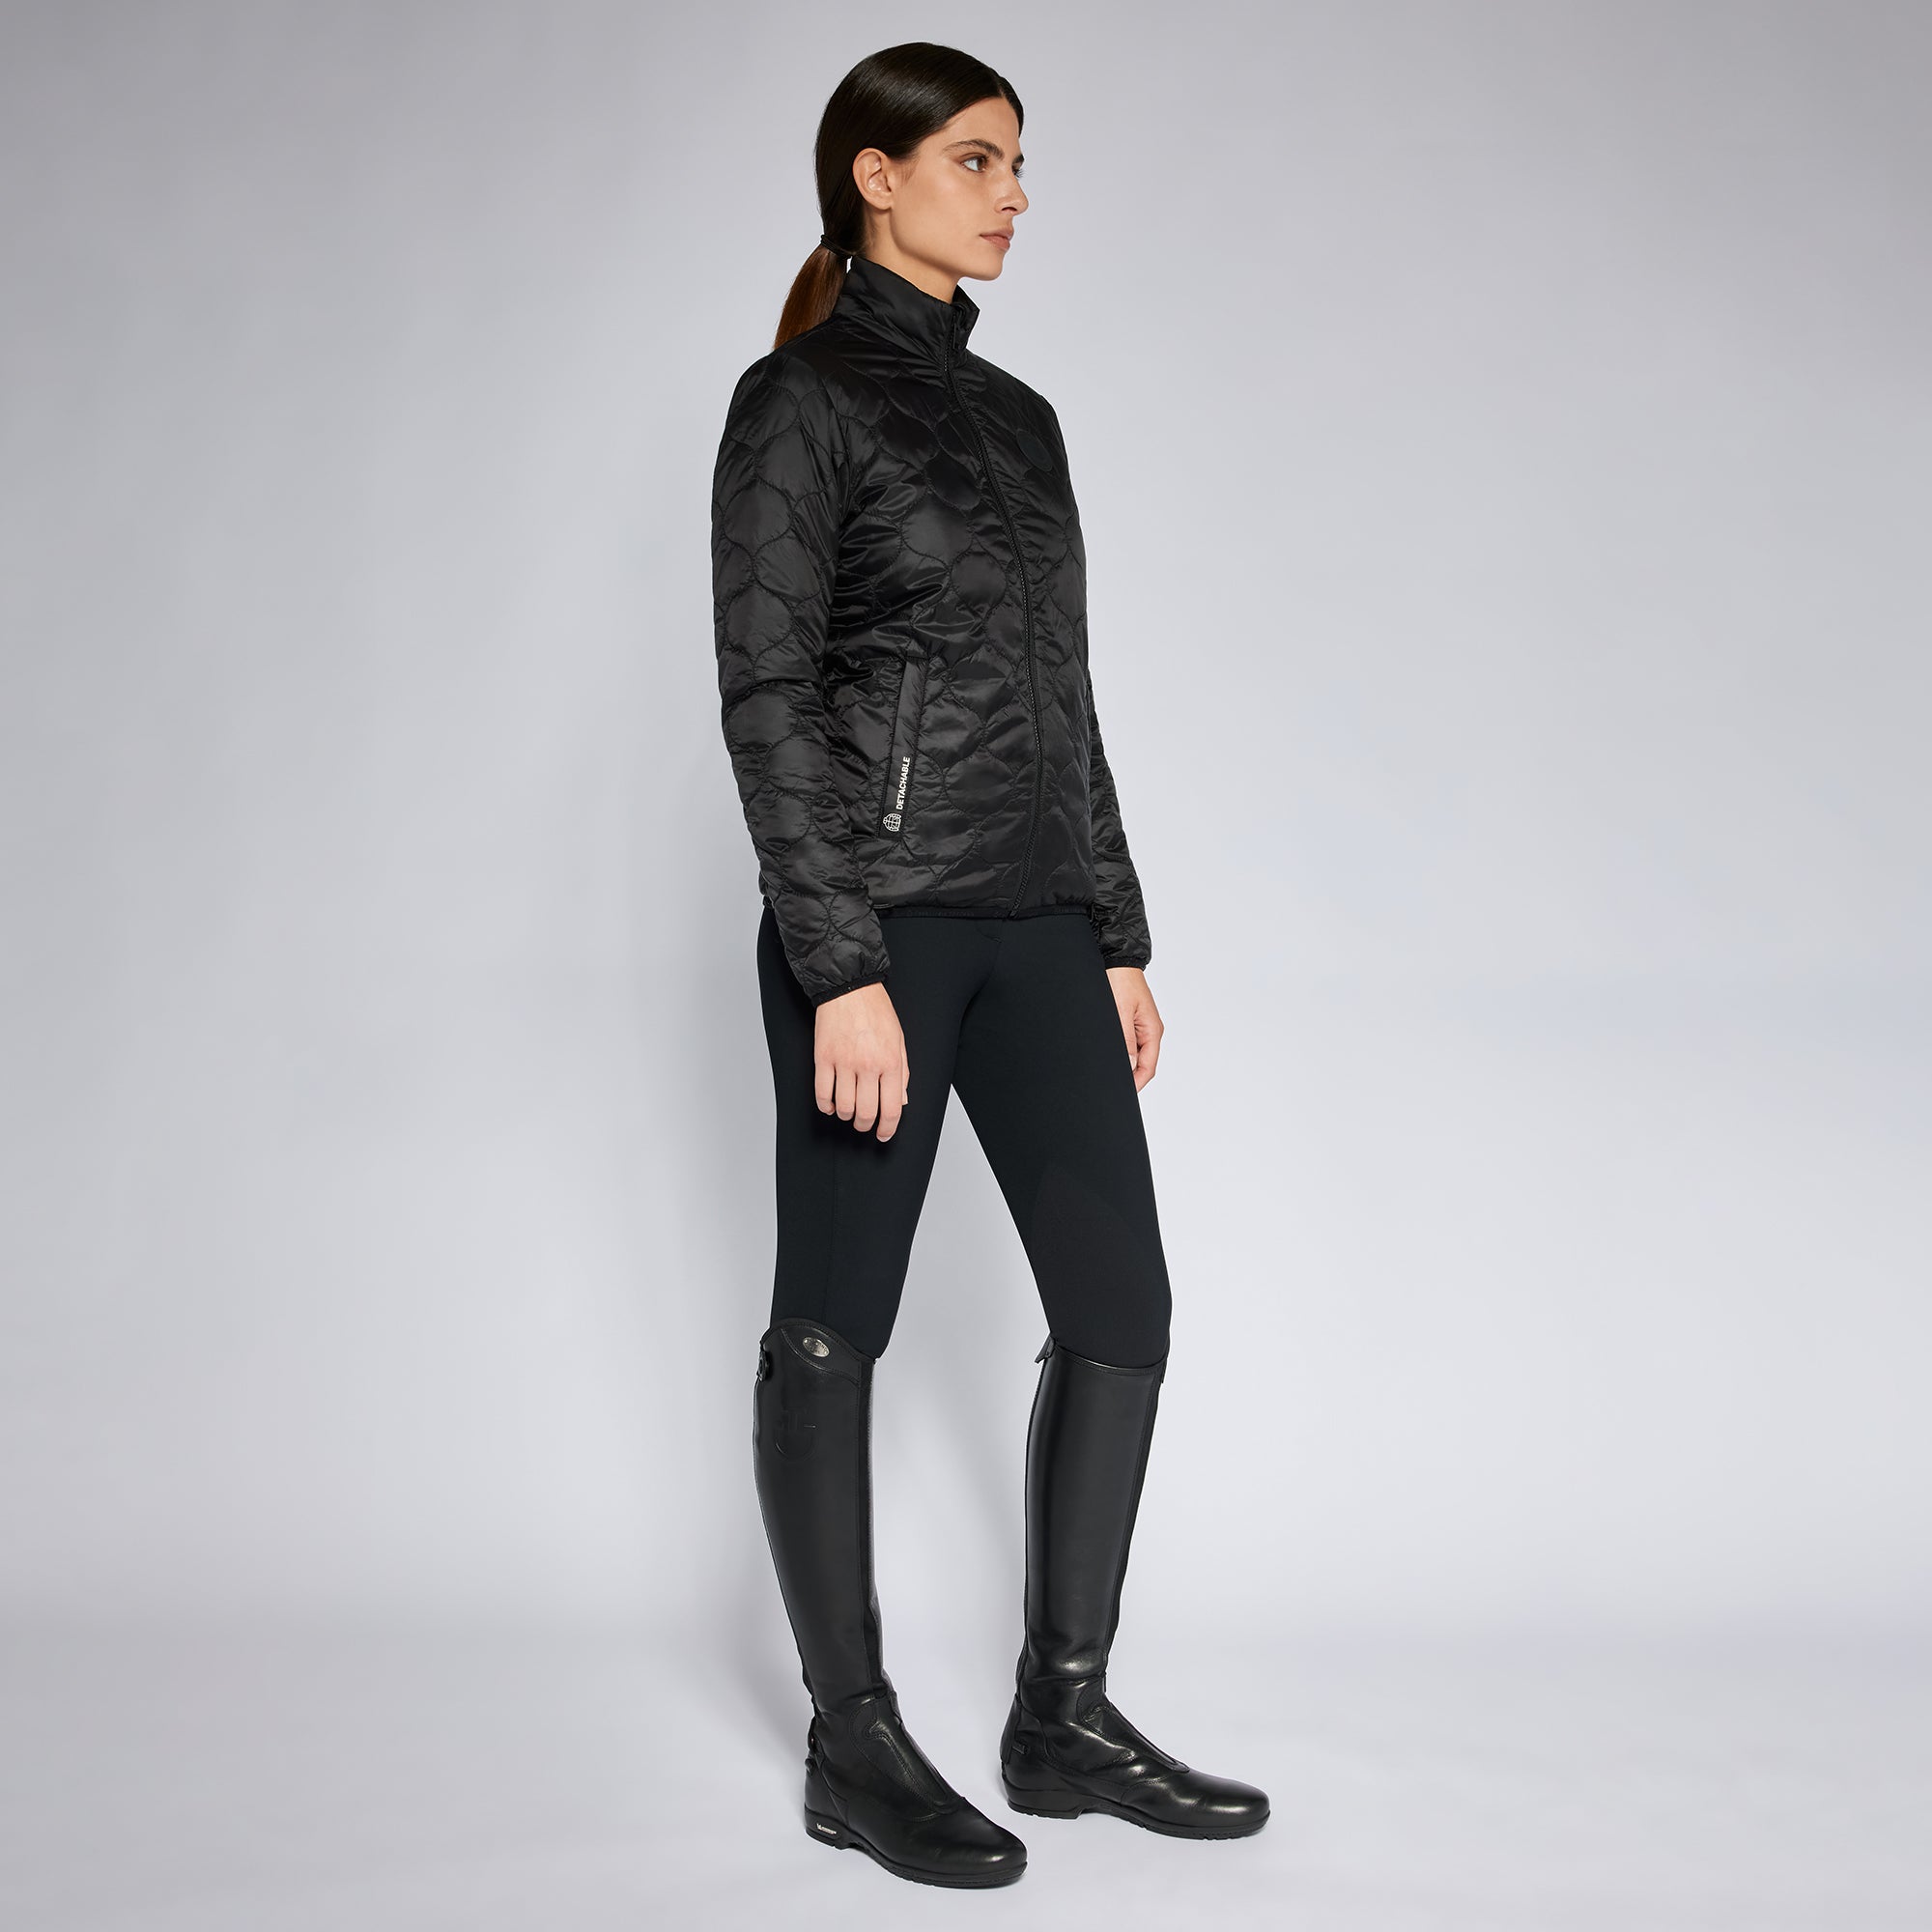 Mit ihrem schlanken Design und der robusten Konstruktion ist die Women's Revo 3-Way Hooded Waterproof Jacket ein Must-Have für jede ernsthafte Reiterin.